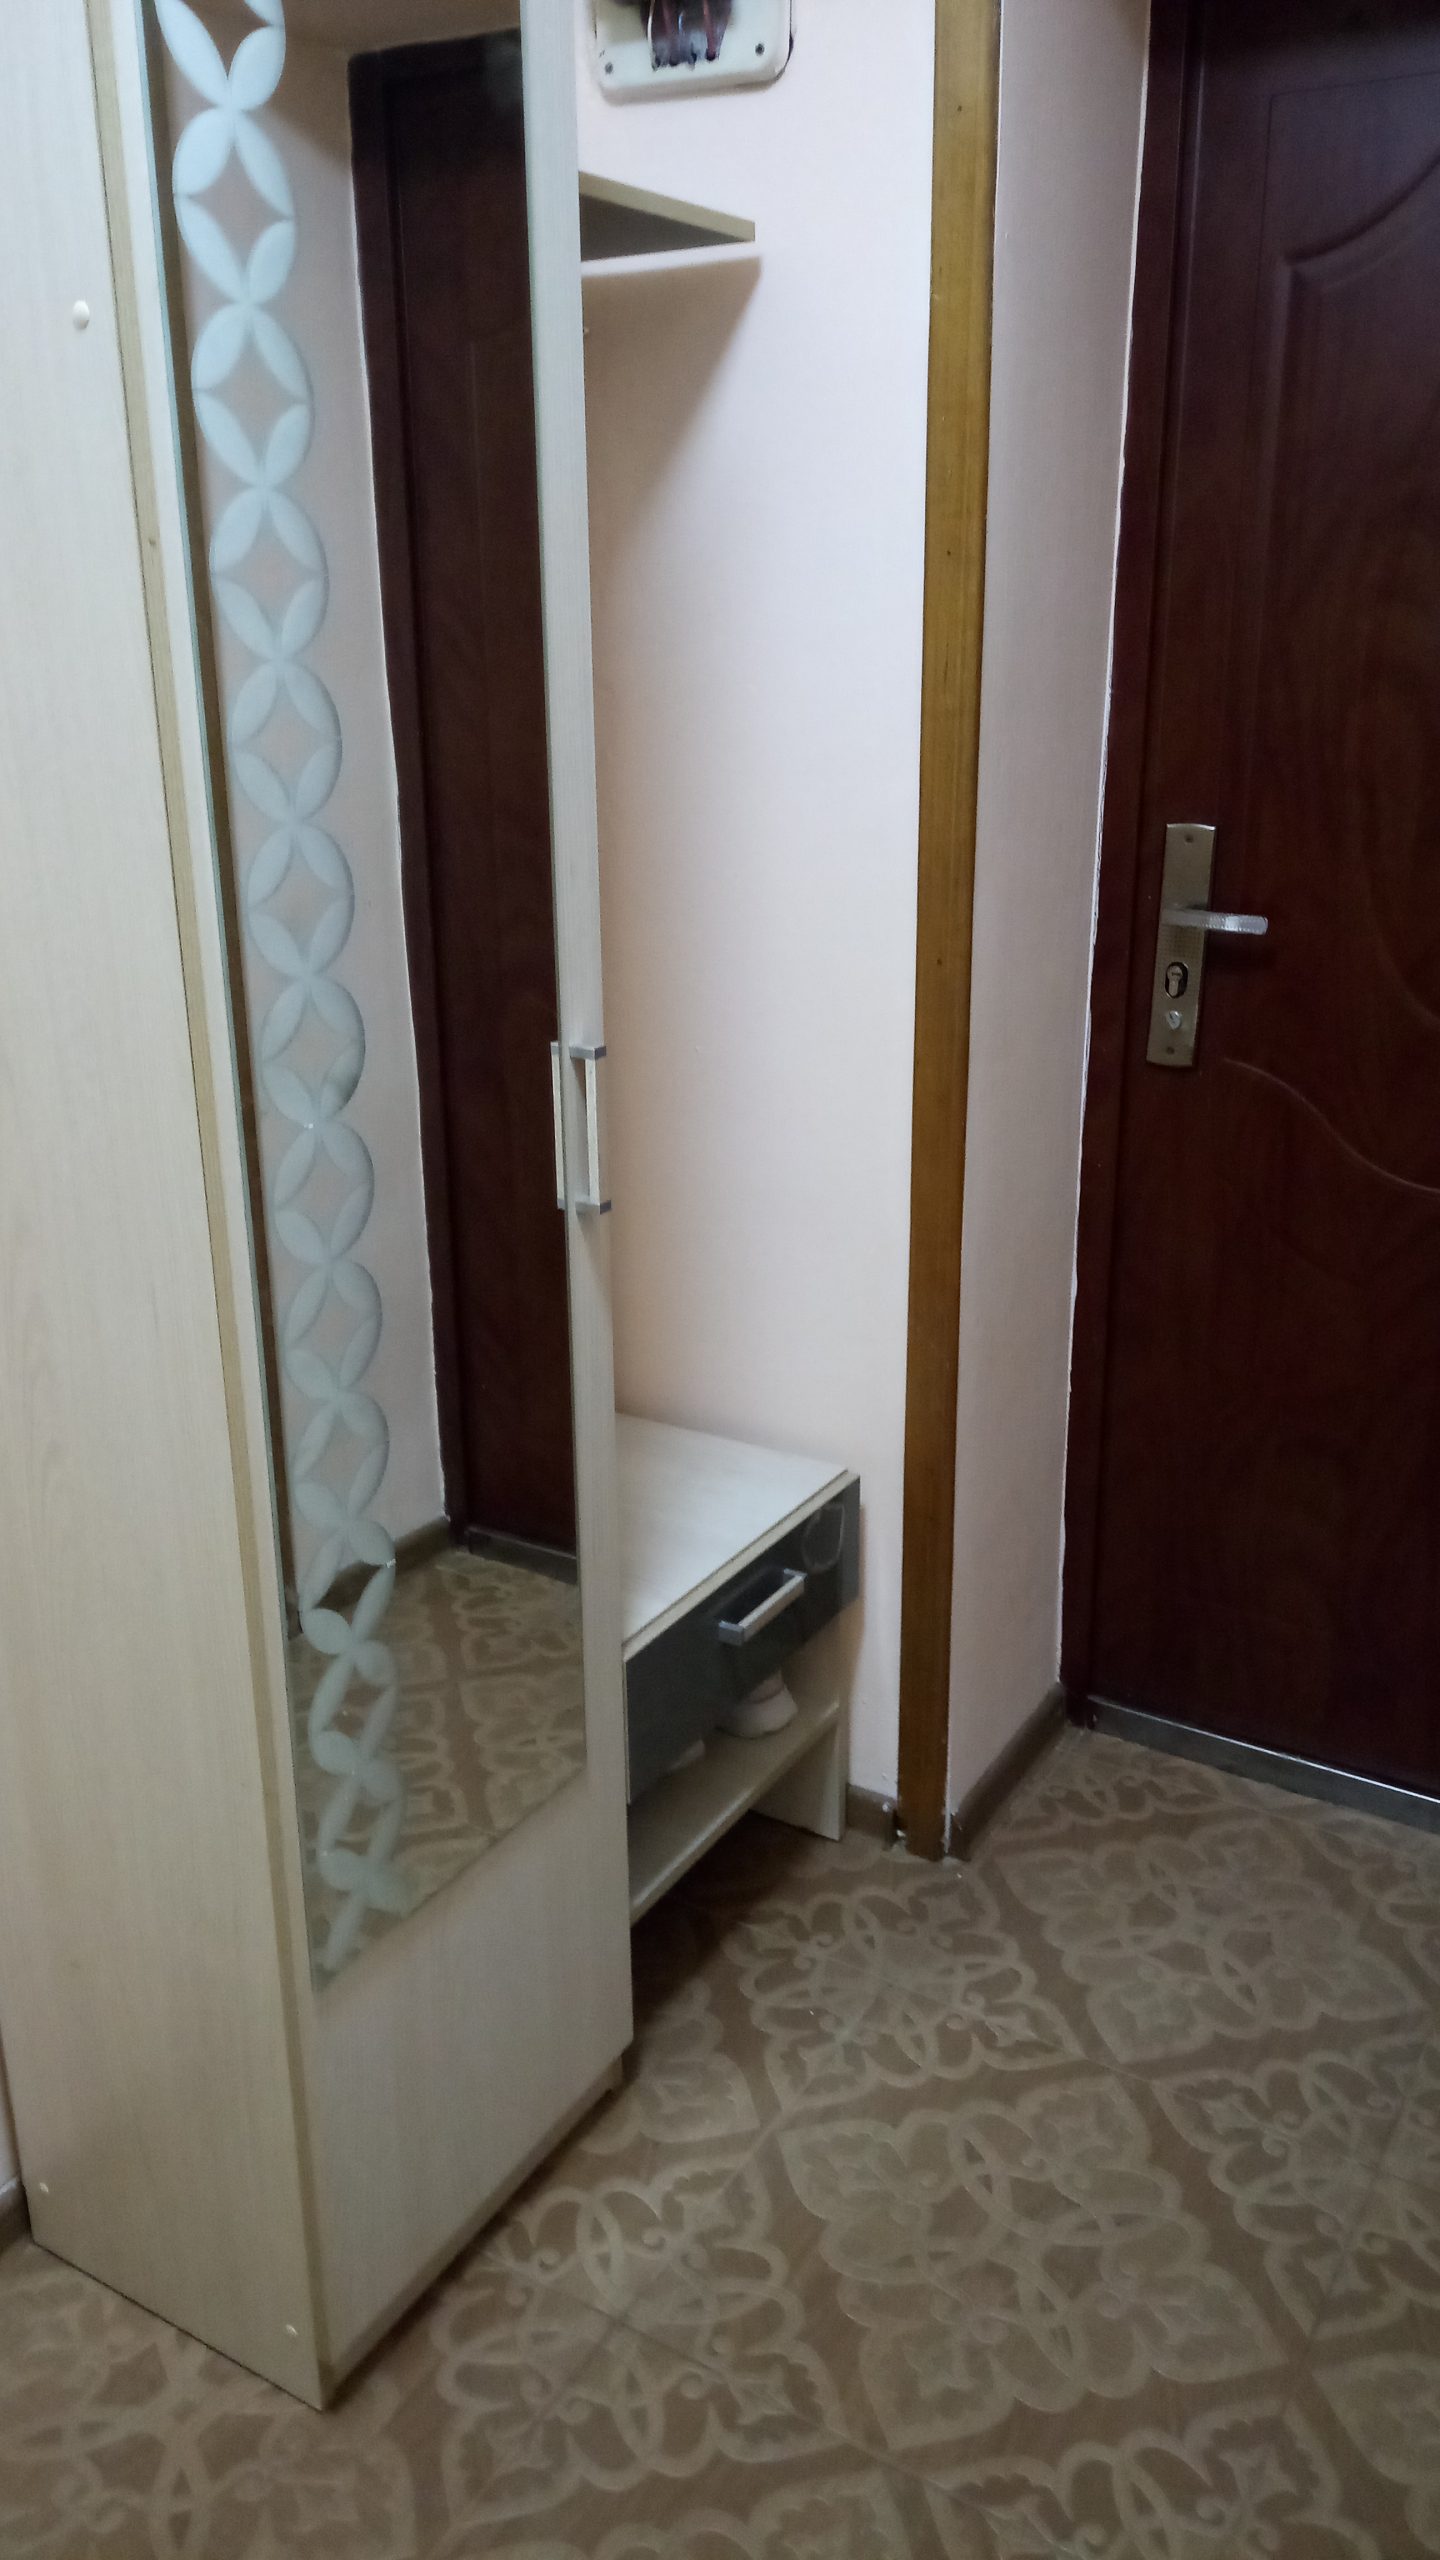 Комната на ул. Войкова, 33 (18кв.м) до 2 гостей